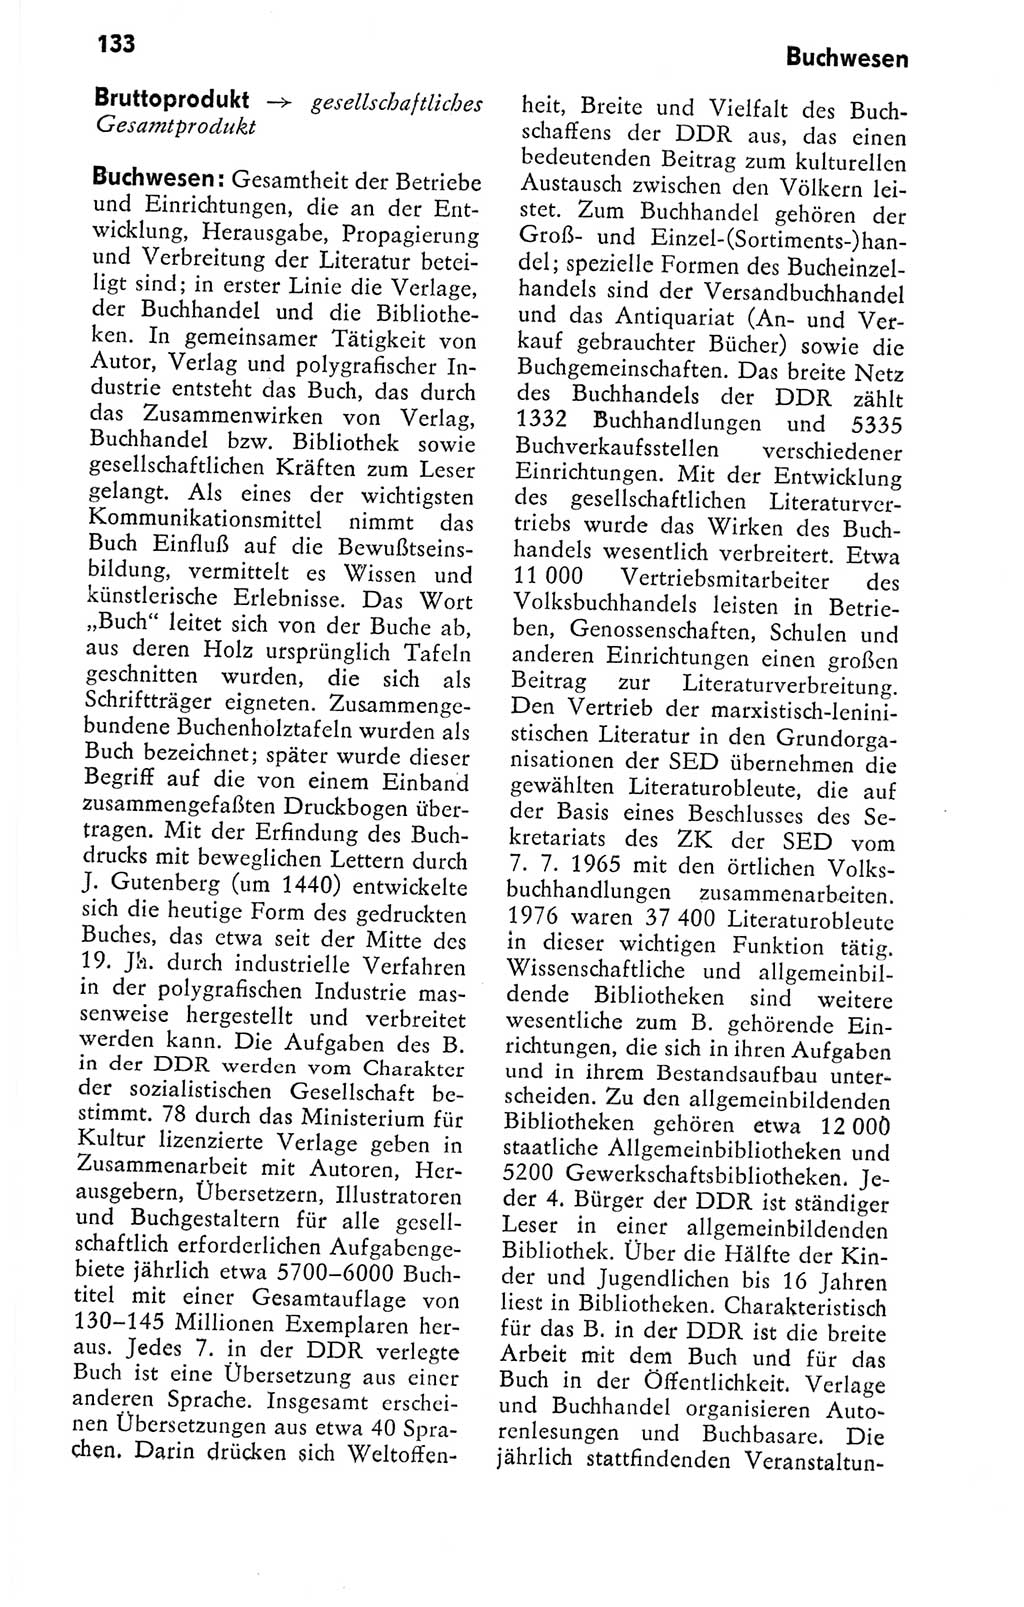 Kleines politisches Wörterbuch [Deutsche Demokratische Republik (DDR)] 1978, Seite 133 (Kl. pol. Wb. DDR 1978, S. 133)